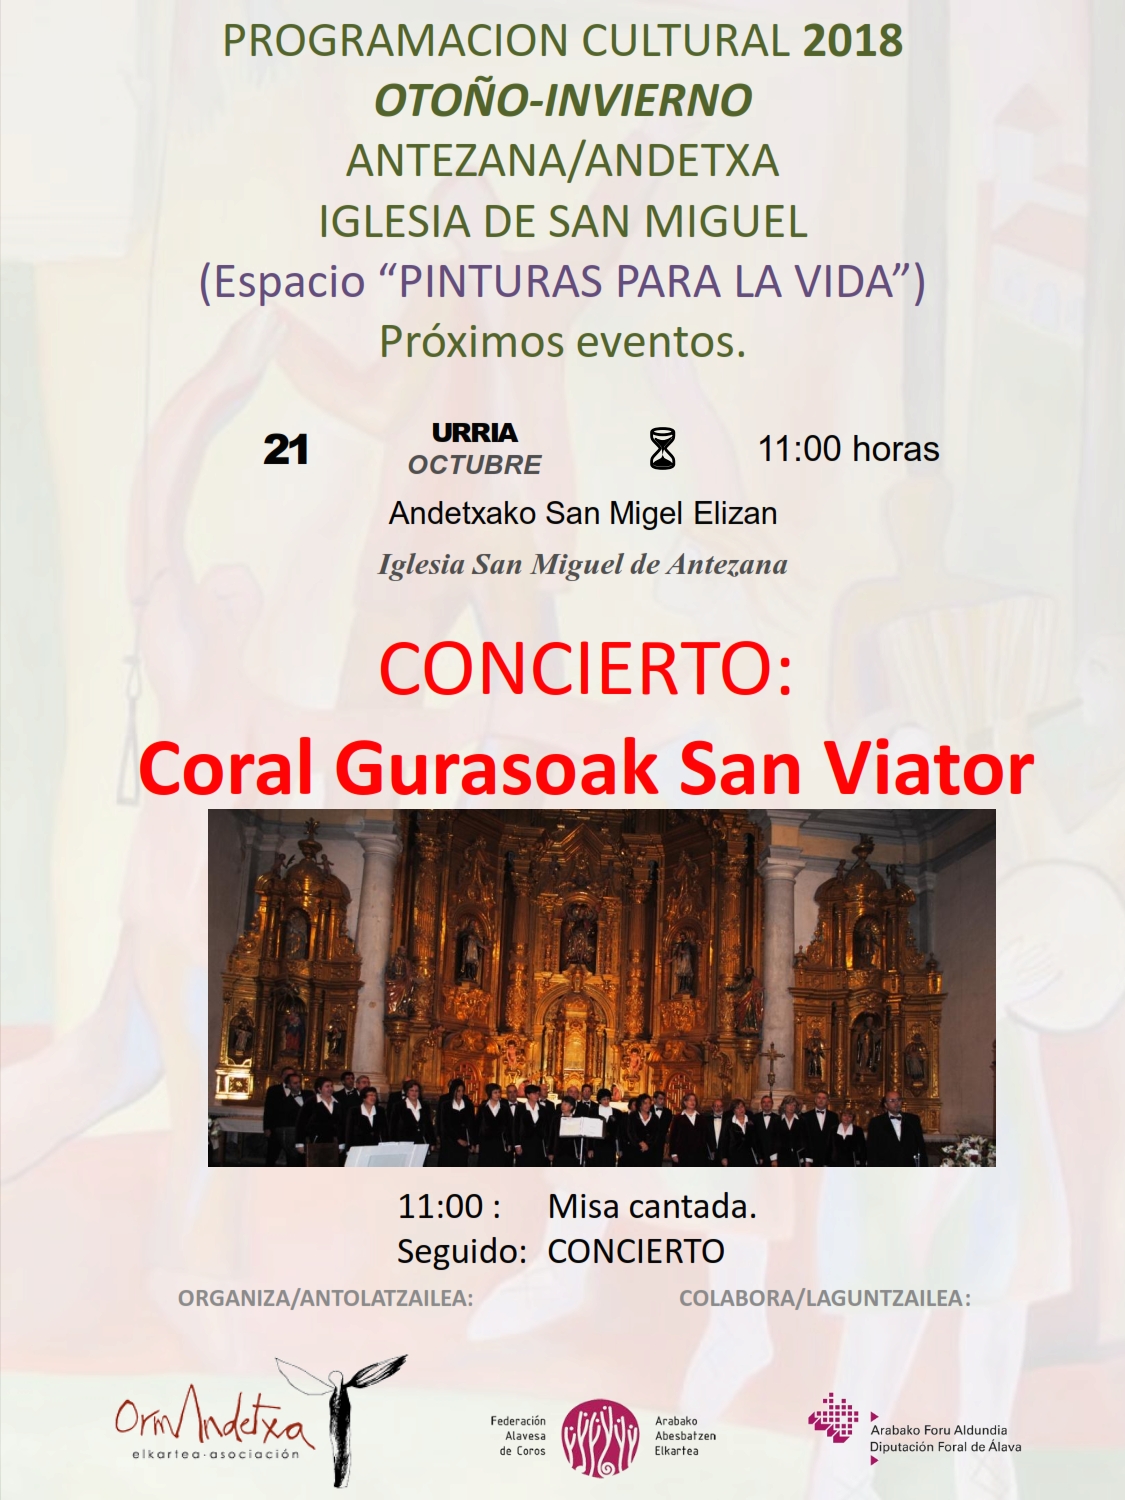 PROGRAMACIÓN CULTURAL 2018, concierto Coral Gurasoak San Viator, el próximo domingo 21, a las 11:00h Iglesia San Miguel de Antezana